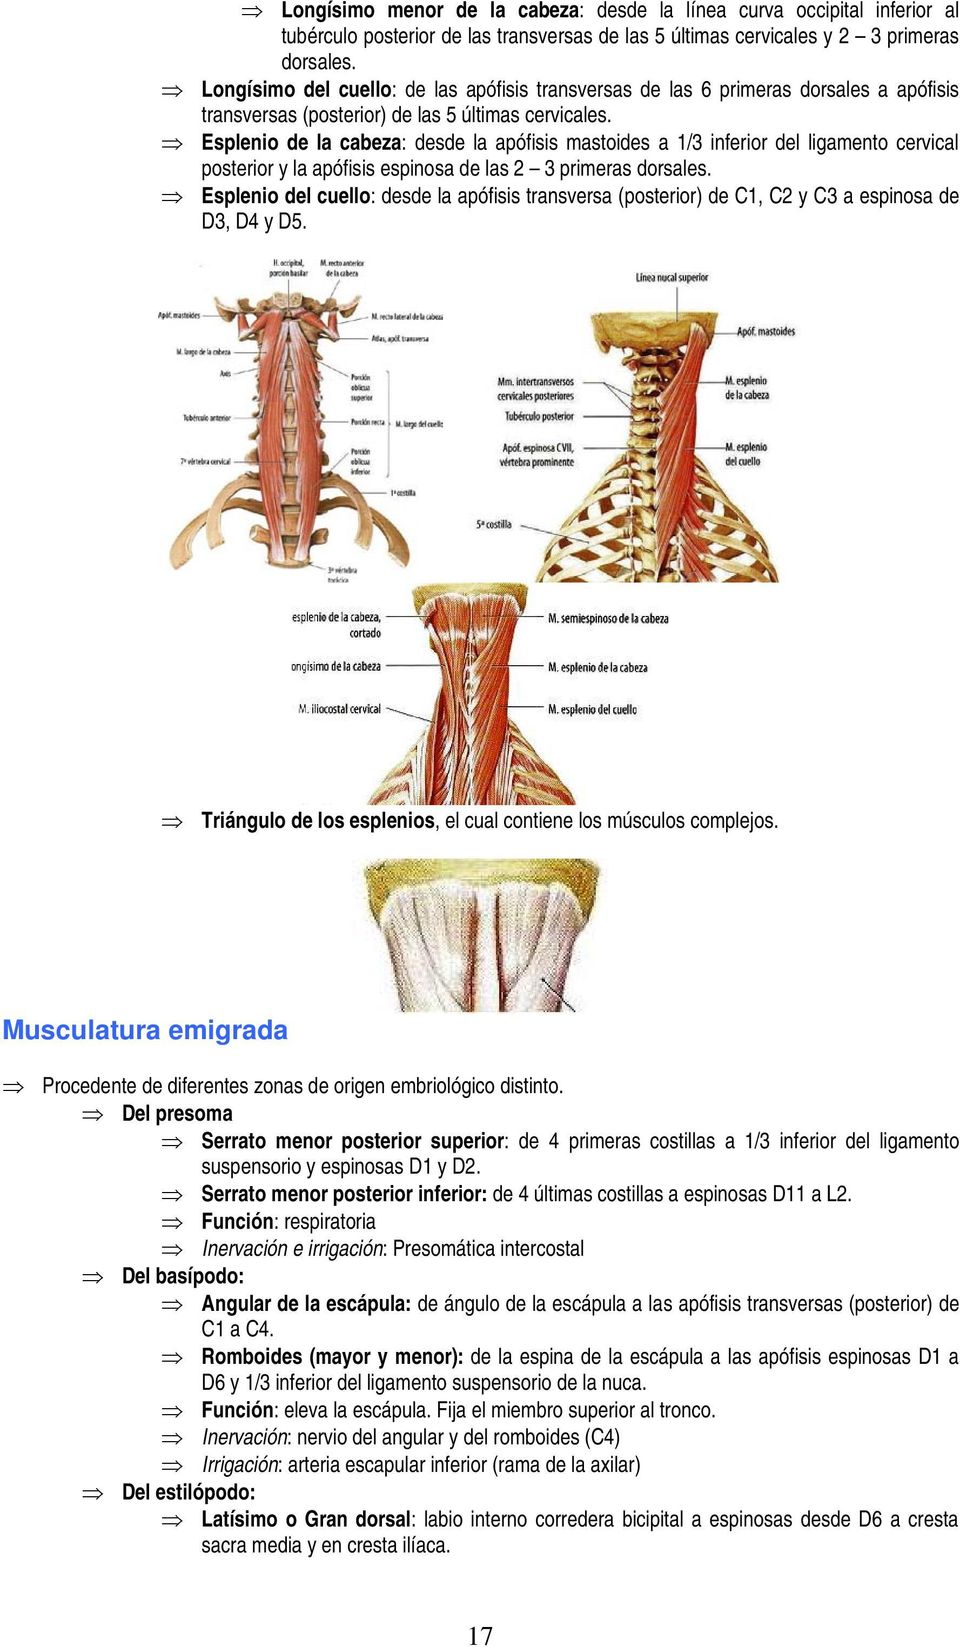 Esplenio de la cabeza: desde la apófisis mastoides a 1/3 inferior del ligamento cervical posterior y la apófisis espinosa de las 2 3 primeras dorsales.